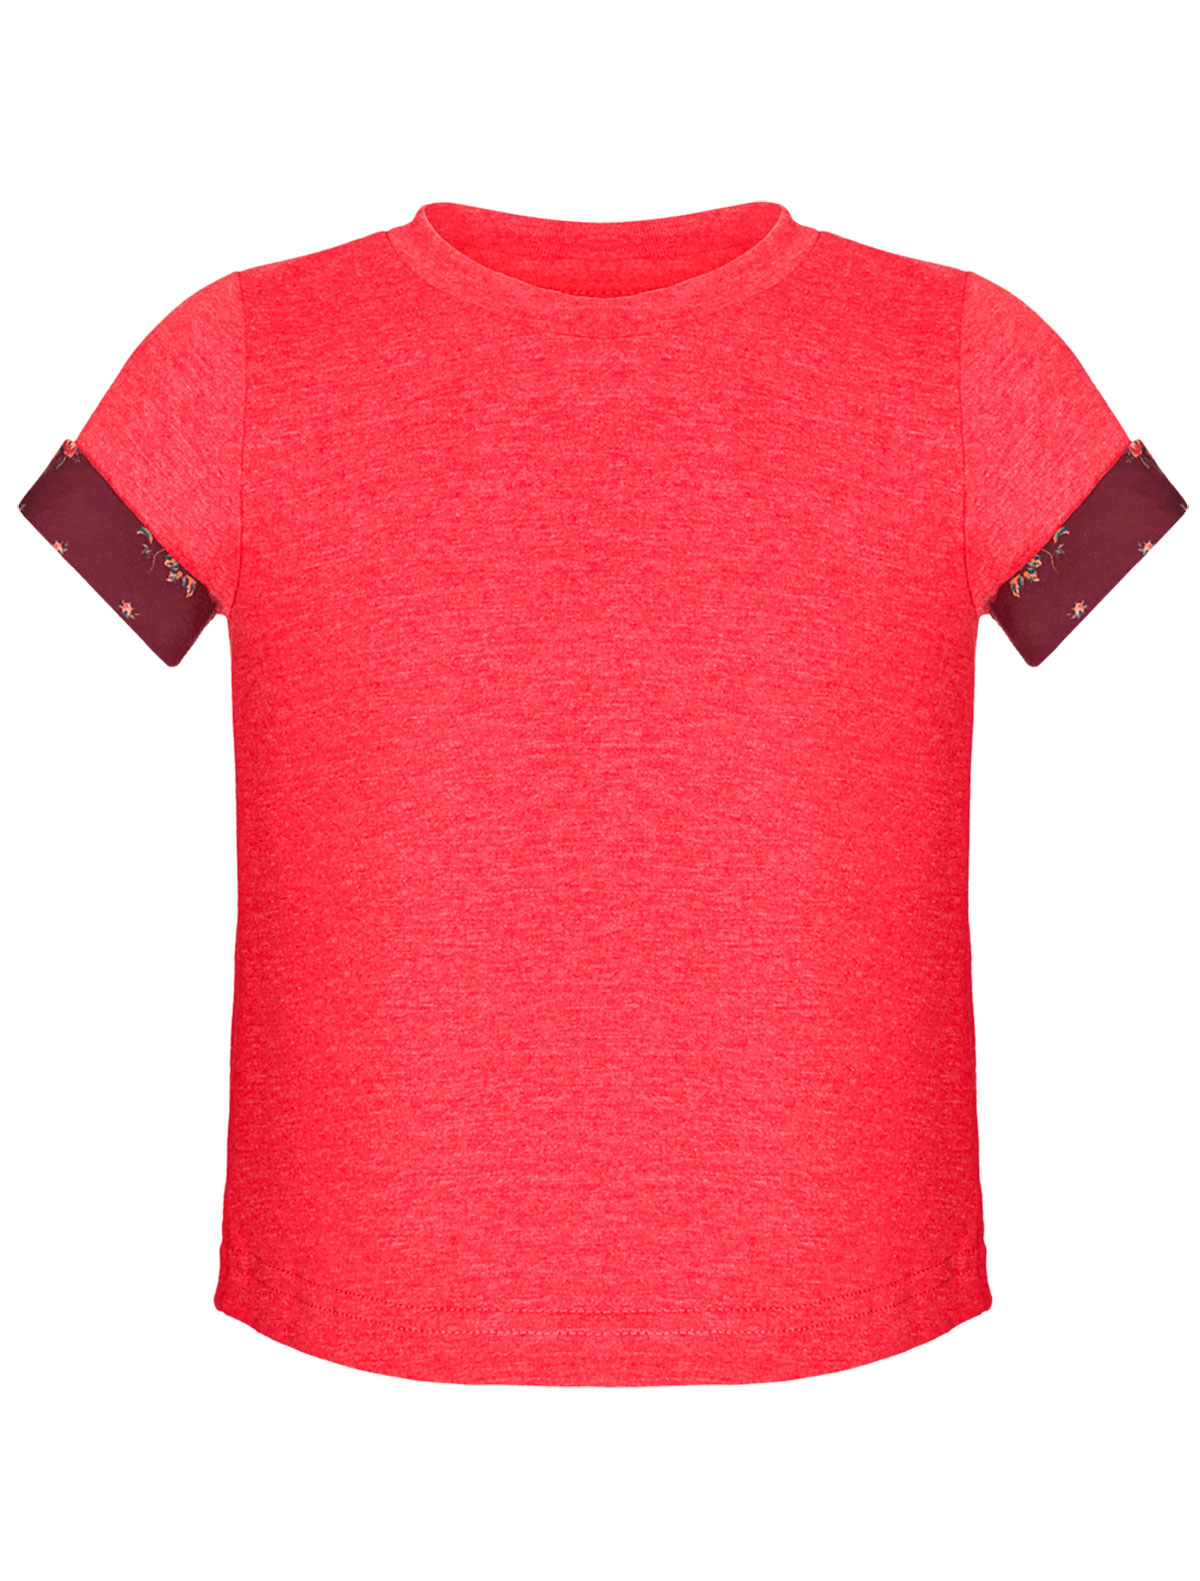 футболка ulyana sergeenko для девочки, красная